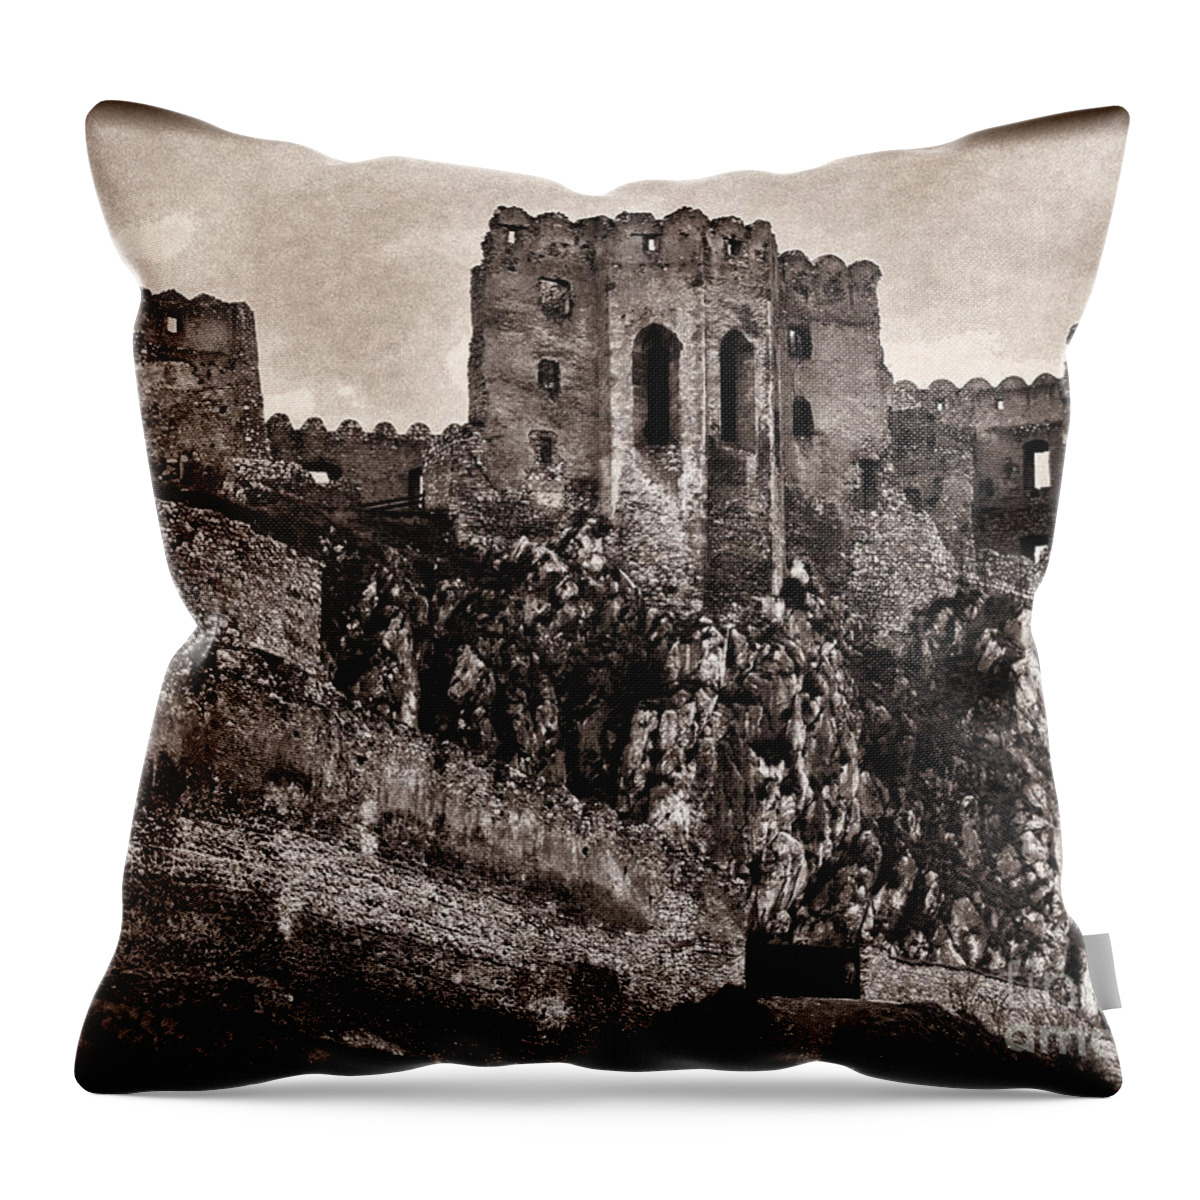 Castle Throw Pillow featuring the photograph Spooky Castle #2 by Les Palenik